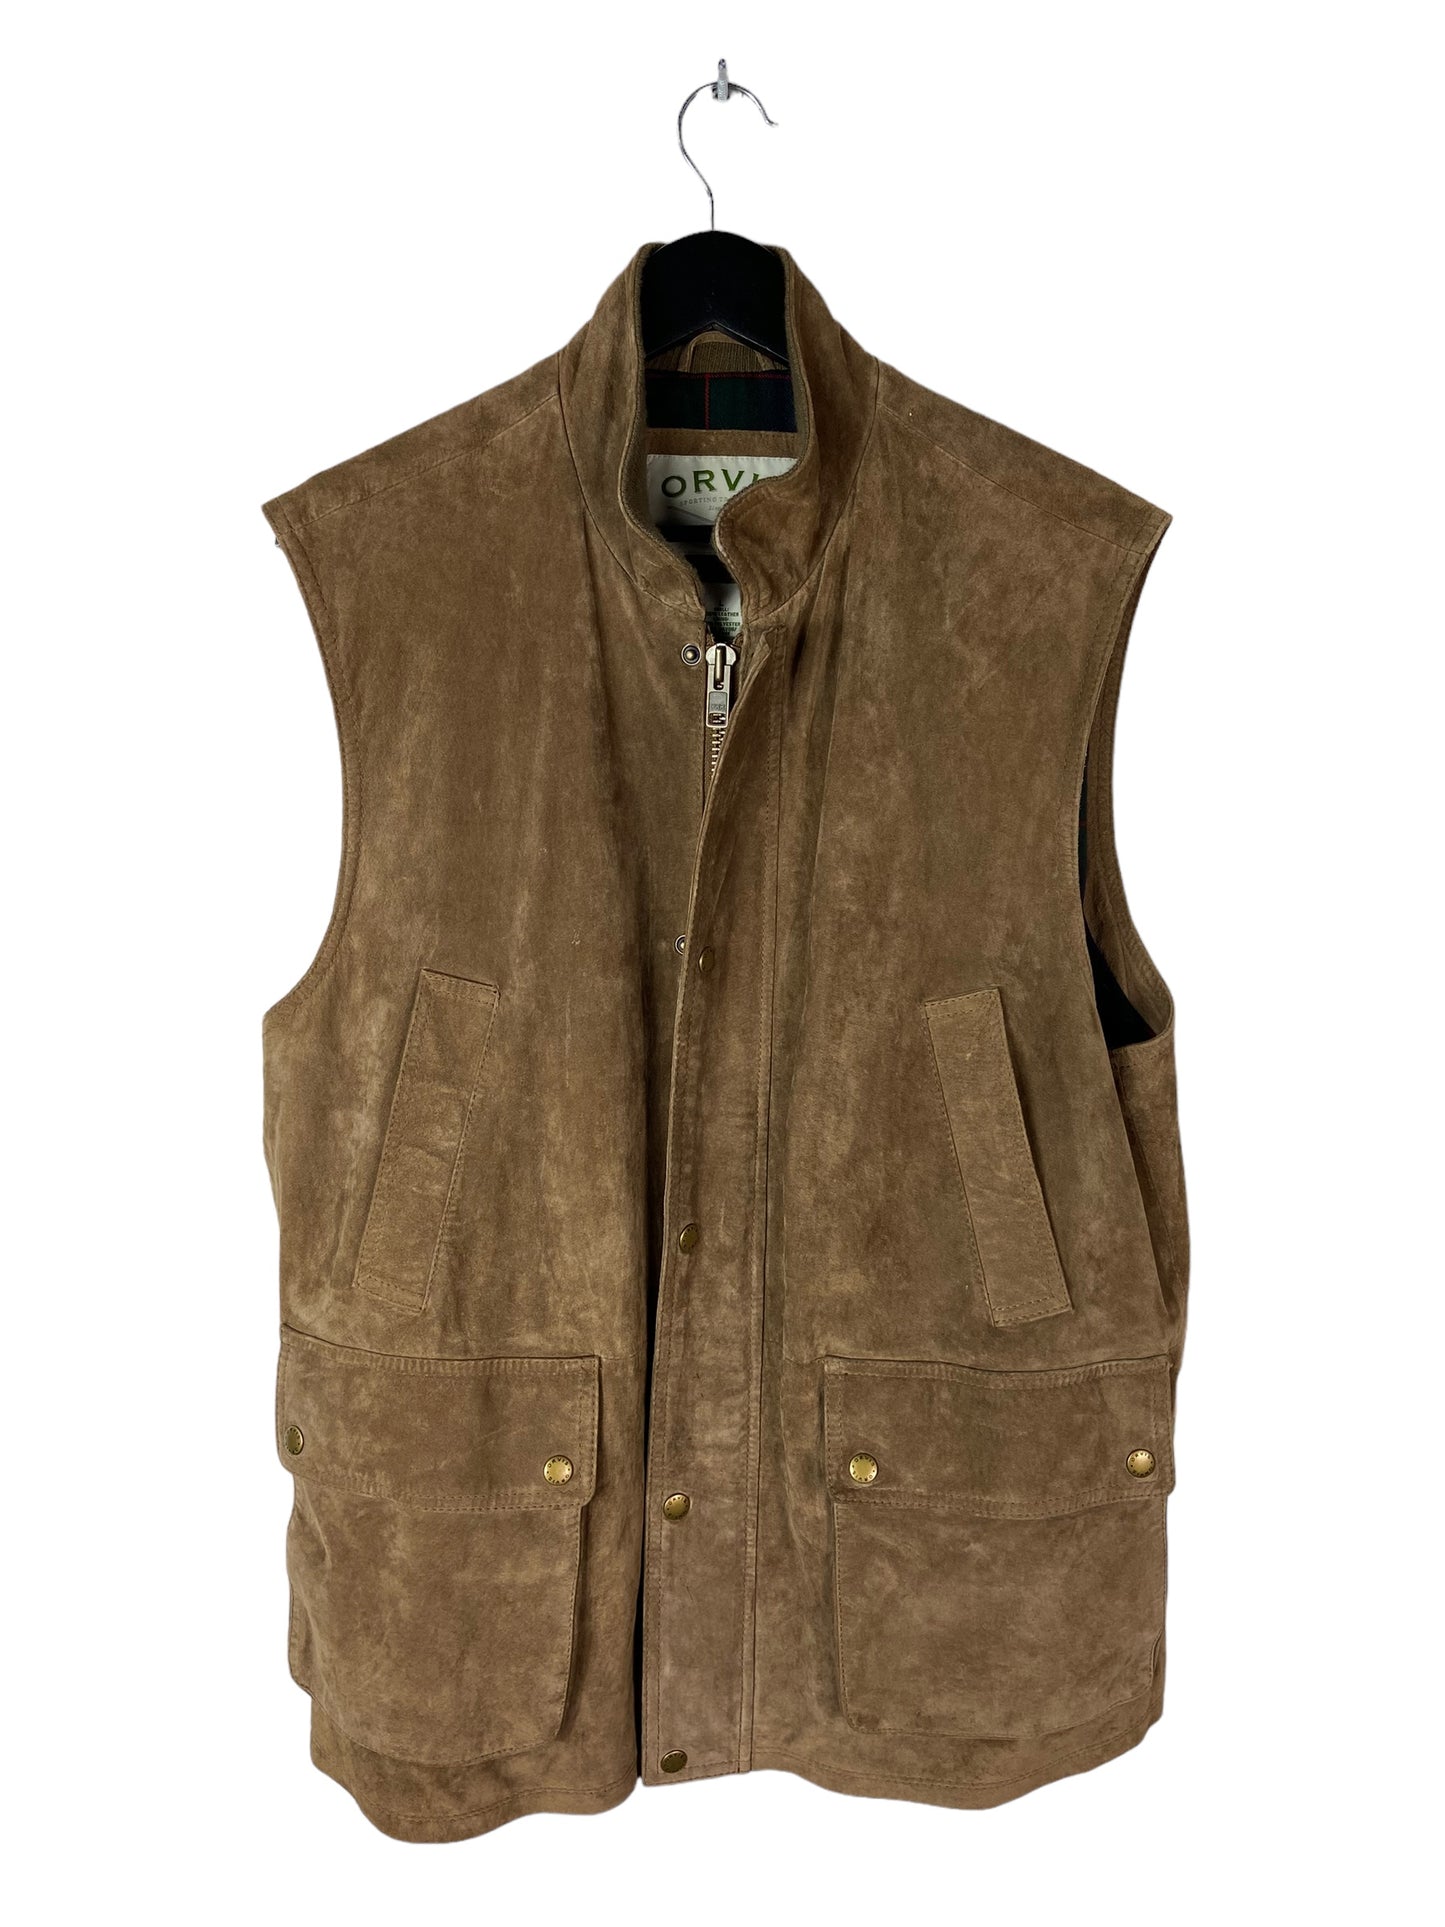 VTG Orvis Leather Vest Sz L